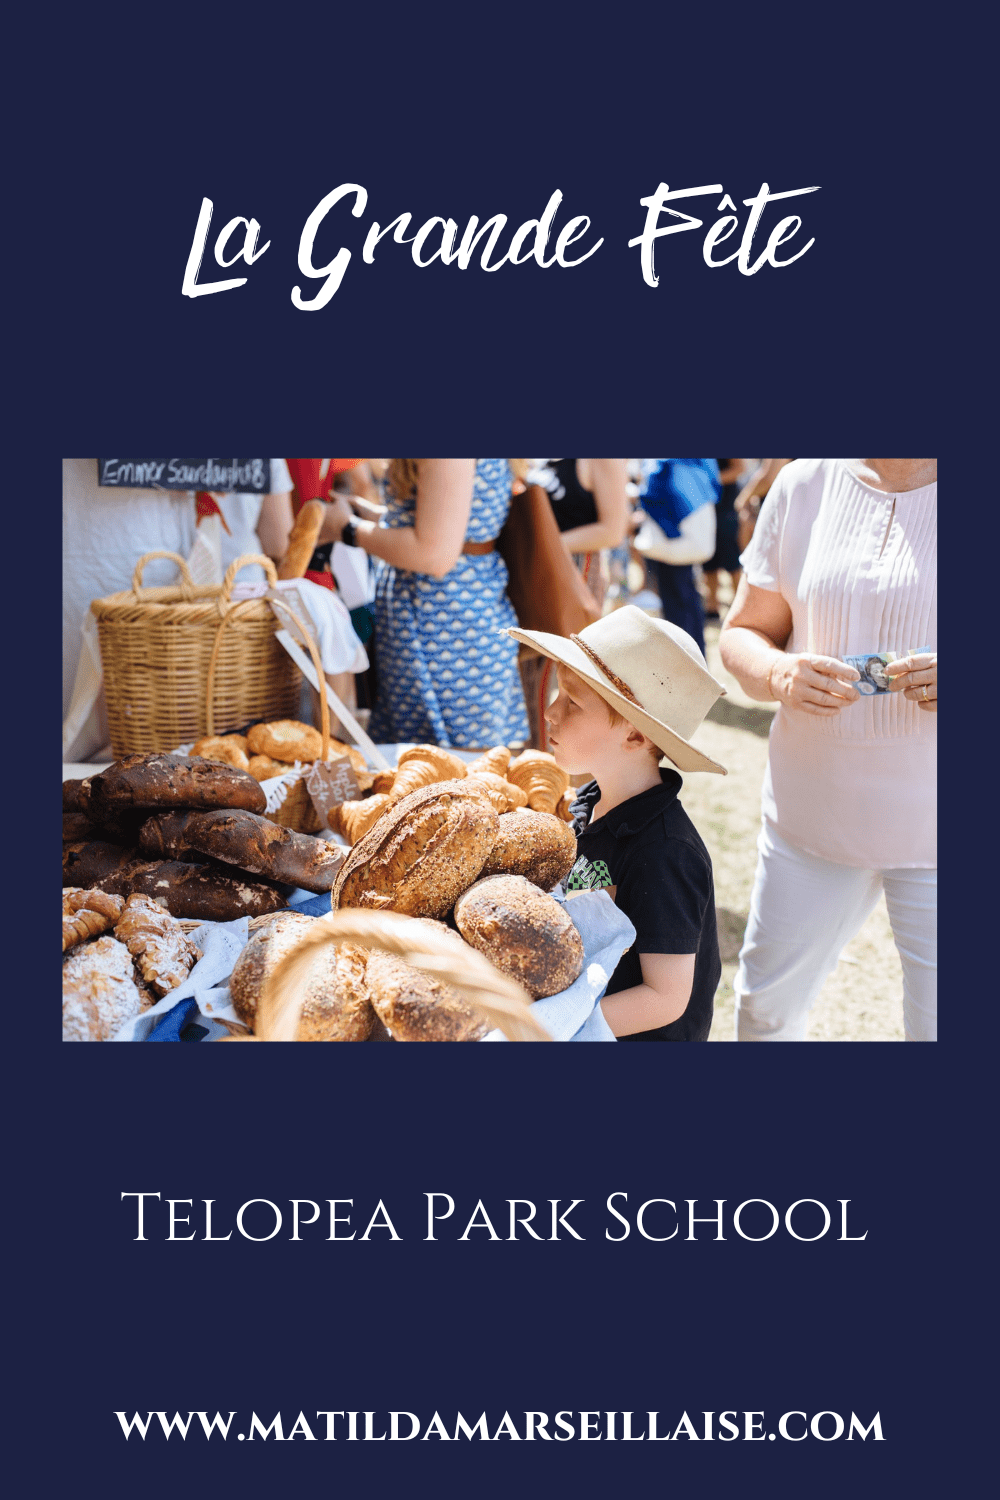 La fête des gourmands, La Grande Fête de l’école Telopea Park, a lieu demain !